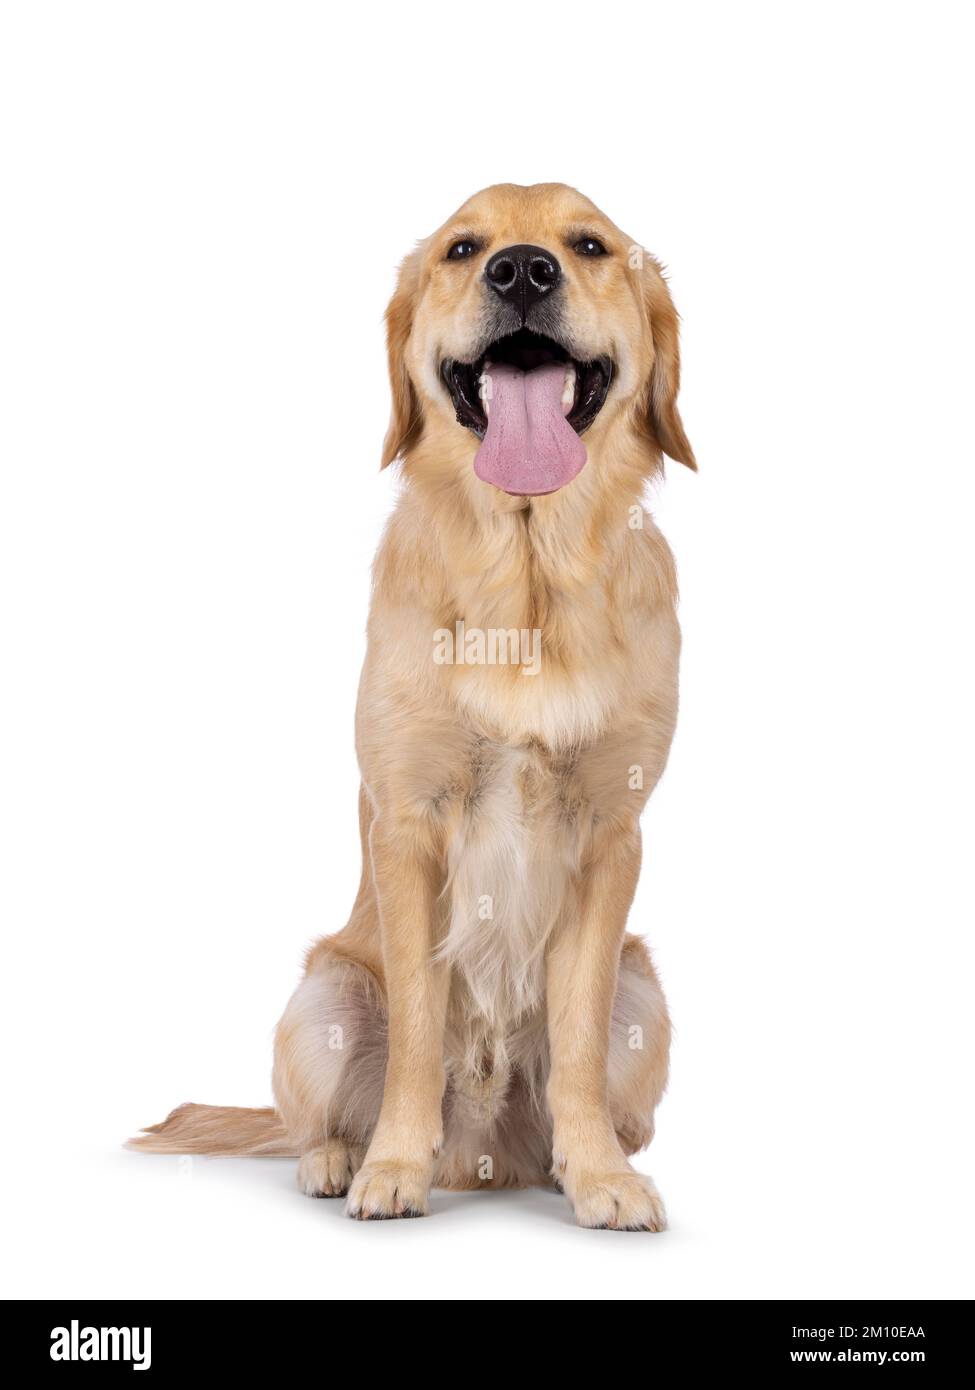 Jeune chien adulte Golden Retriever, assis face à l'avant avec une longue langue vers l'extérieur. En regardant vers l'appareil photo. Isolé sur un fond blanc. Banque D'Images